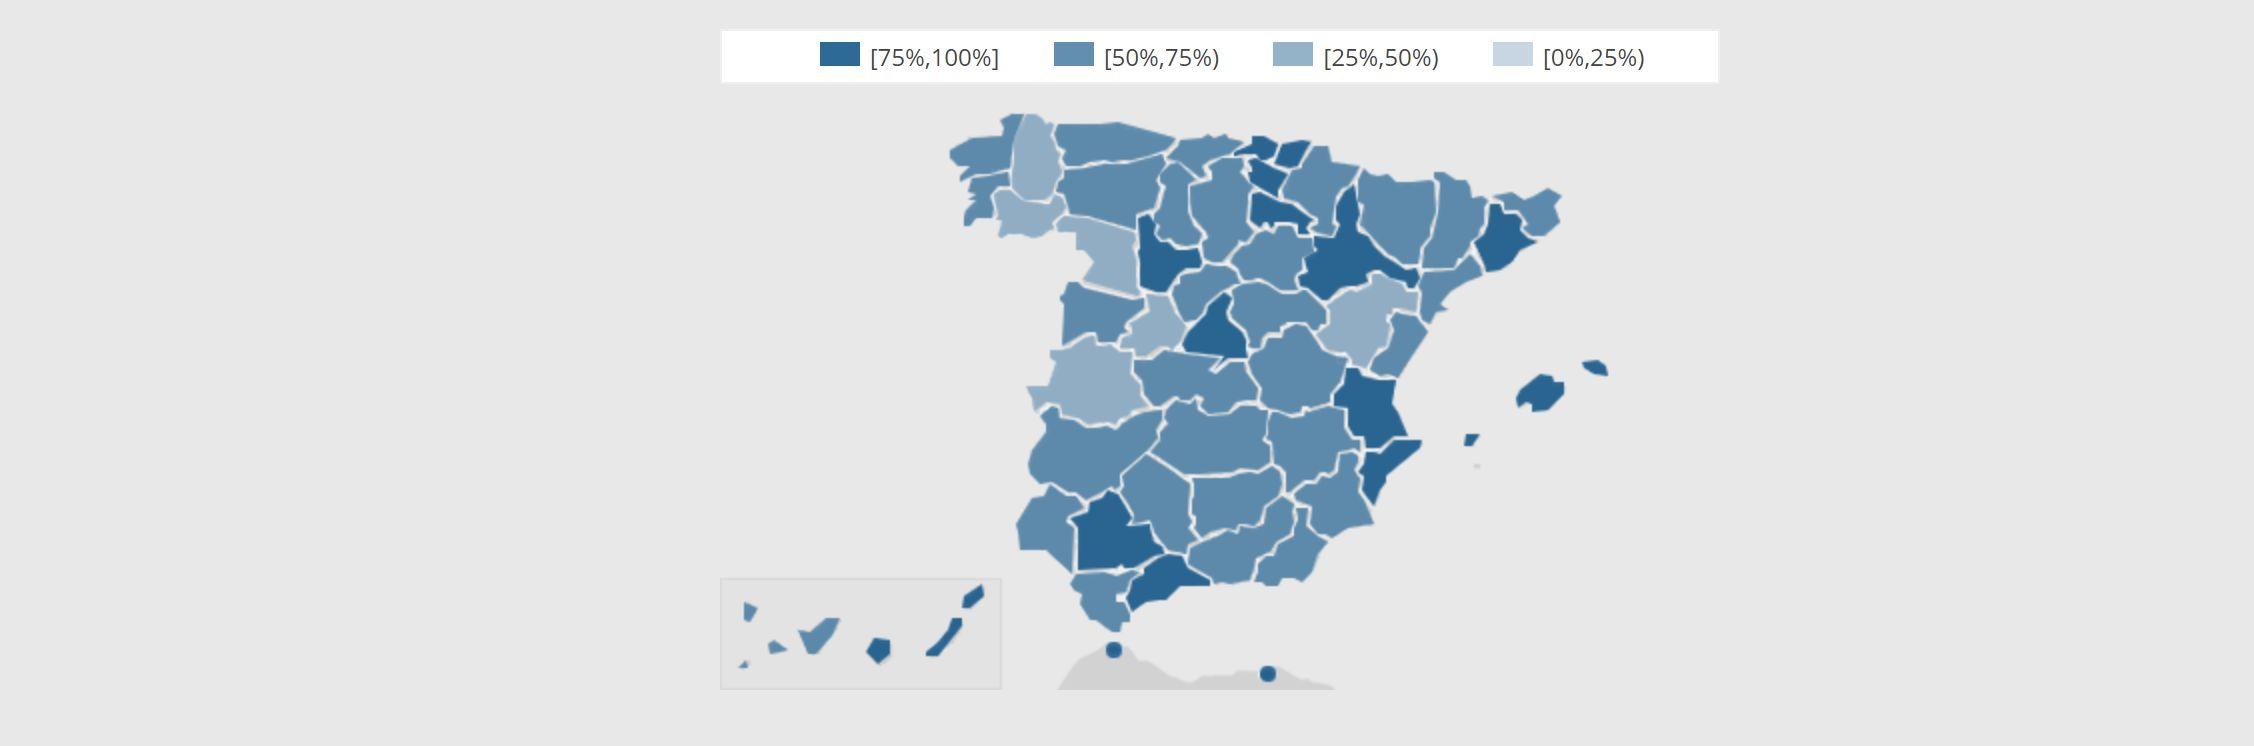 Cobertura y despliegue de fibra óptica en España – resultados y mapa